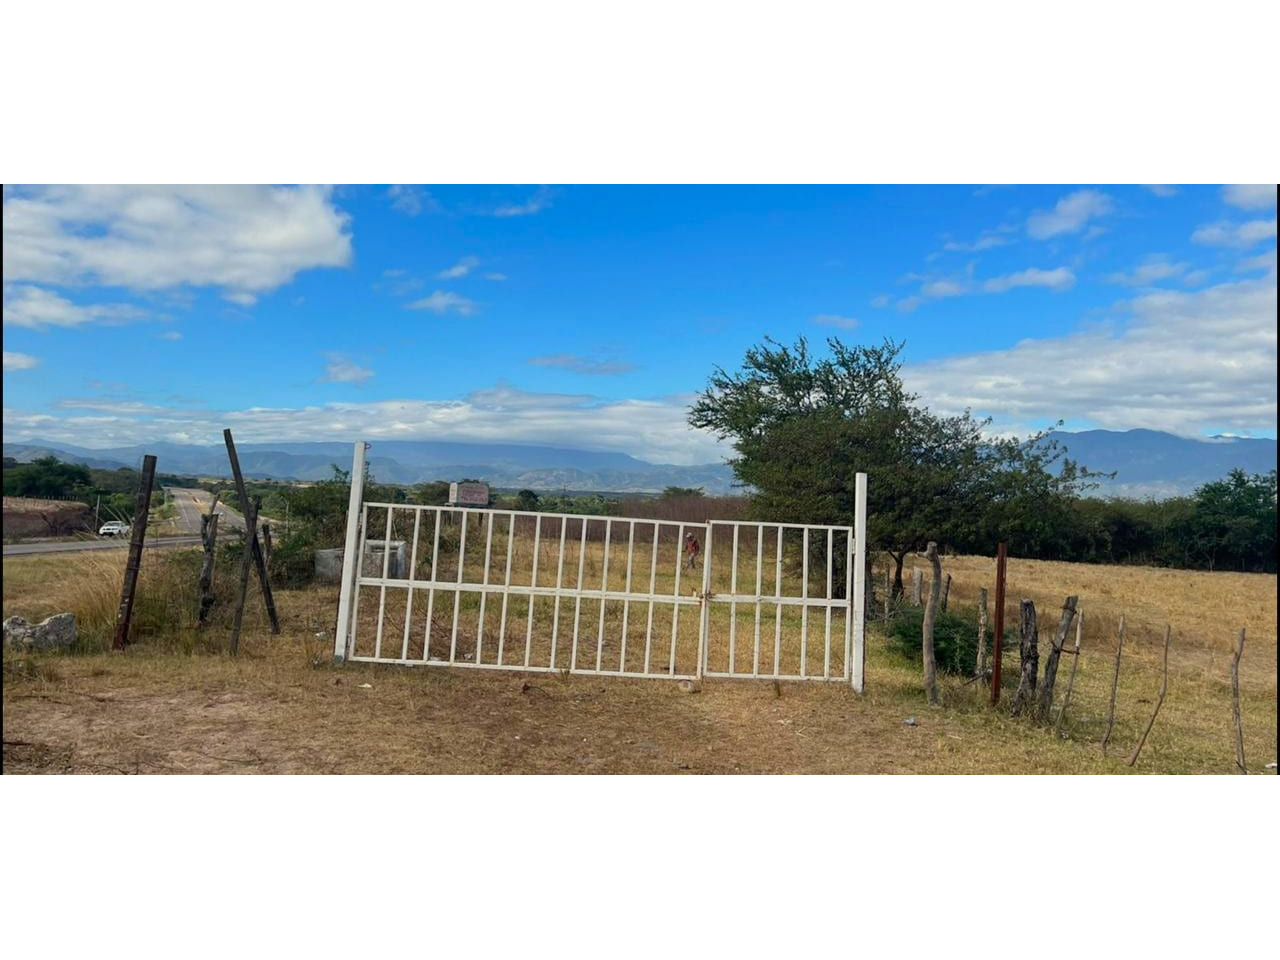 Entrada de acceso con portón de color blanco del terreno para agricultura ubicado en el CA-5, Comayagua, Honduras.